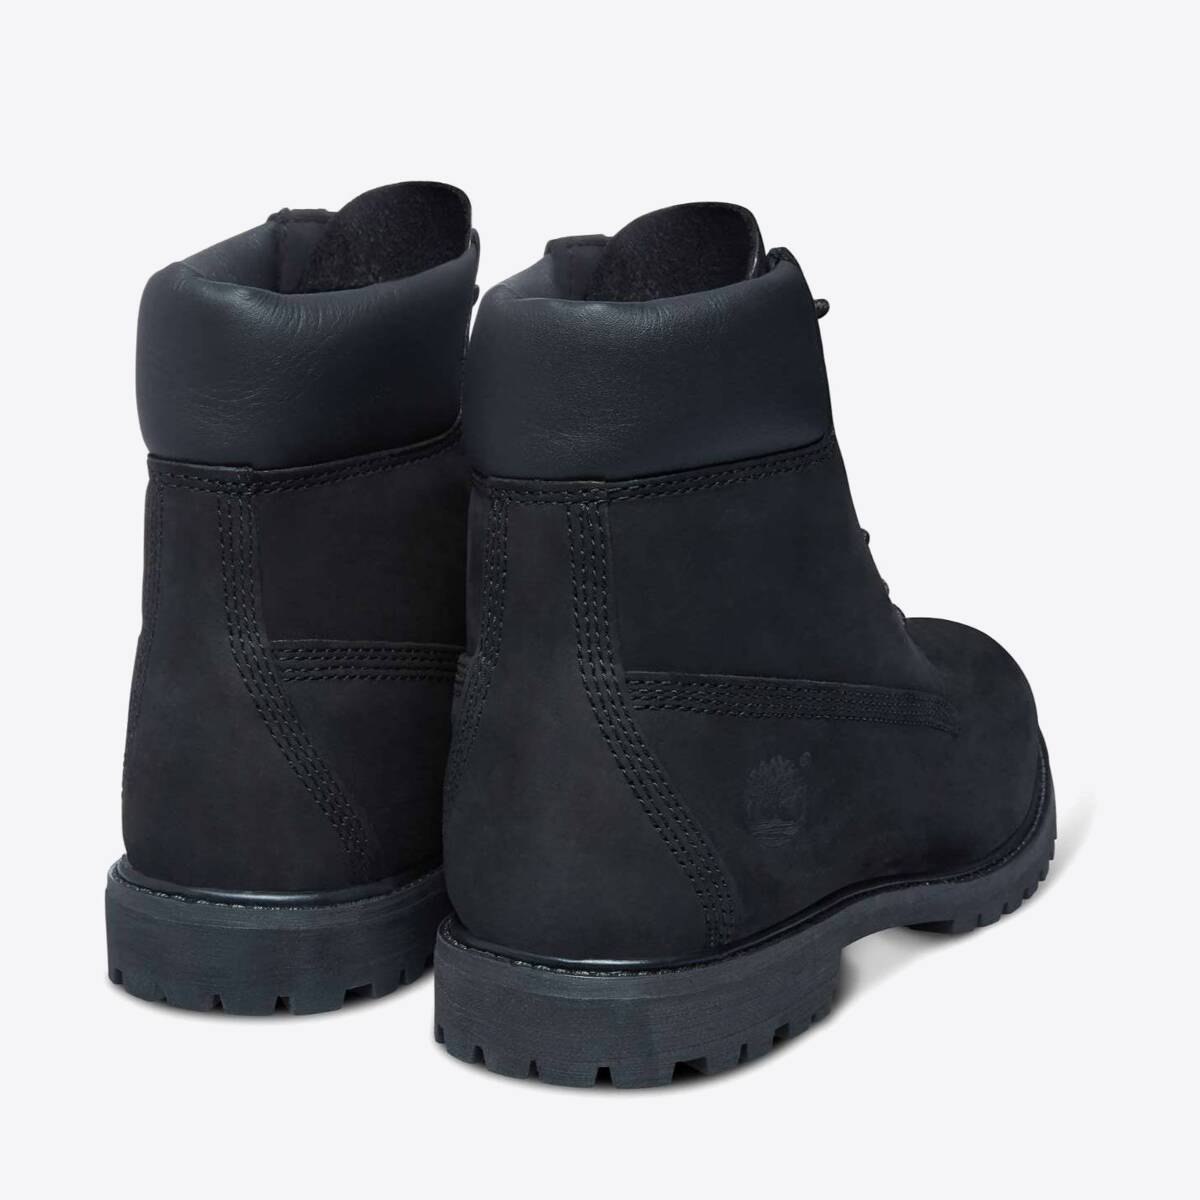  Women's 6-Inch Premium Waterproof Boots Black